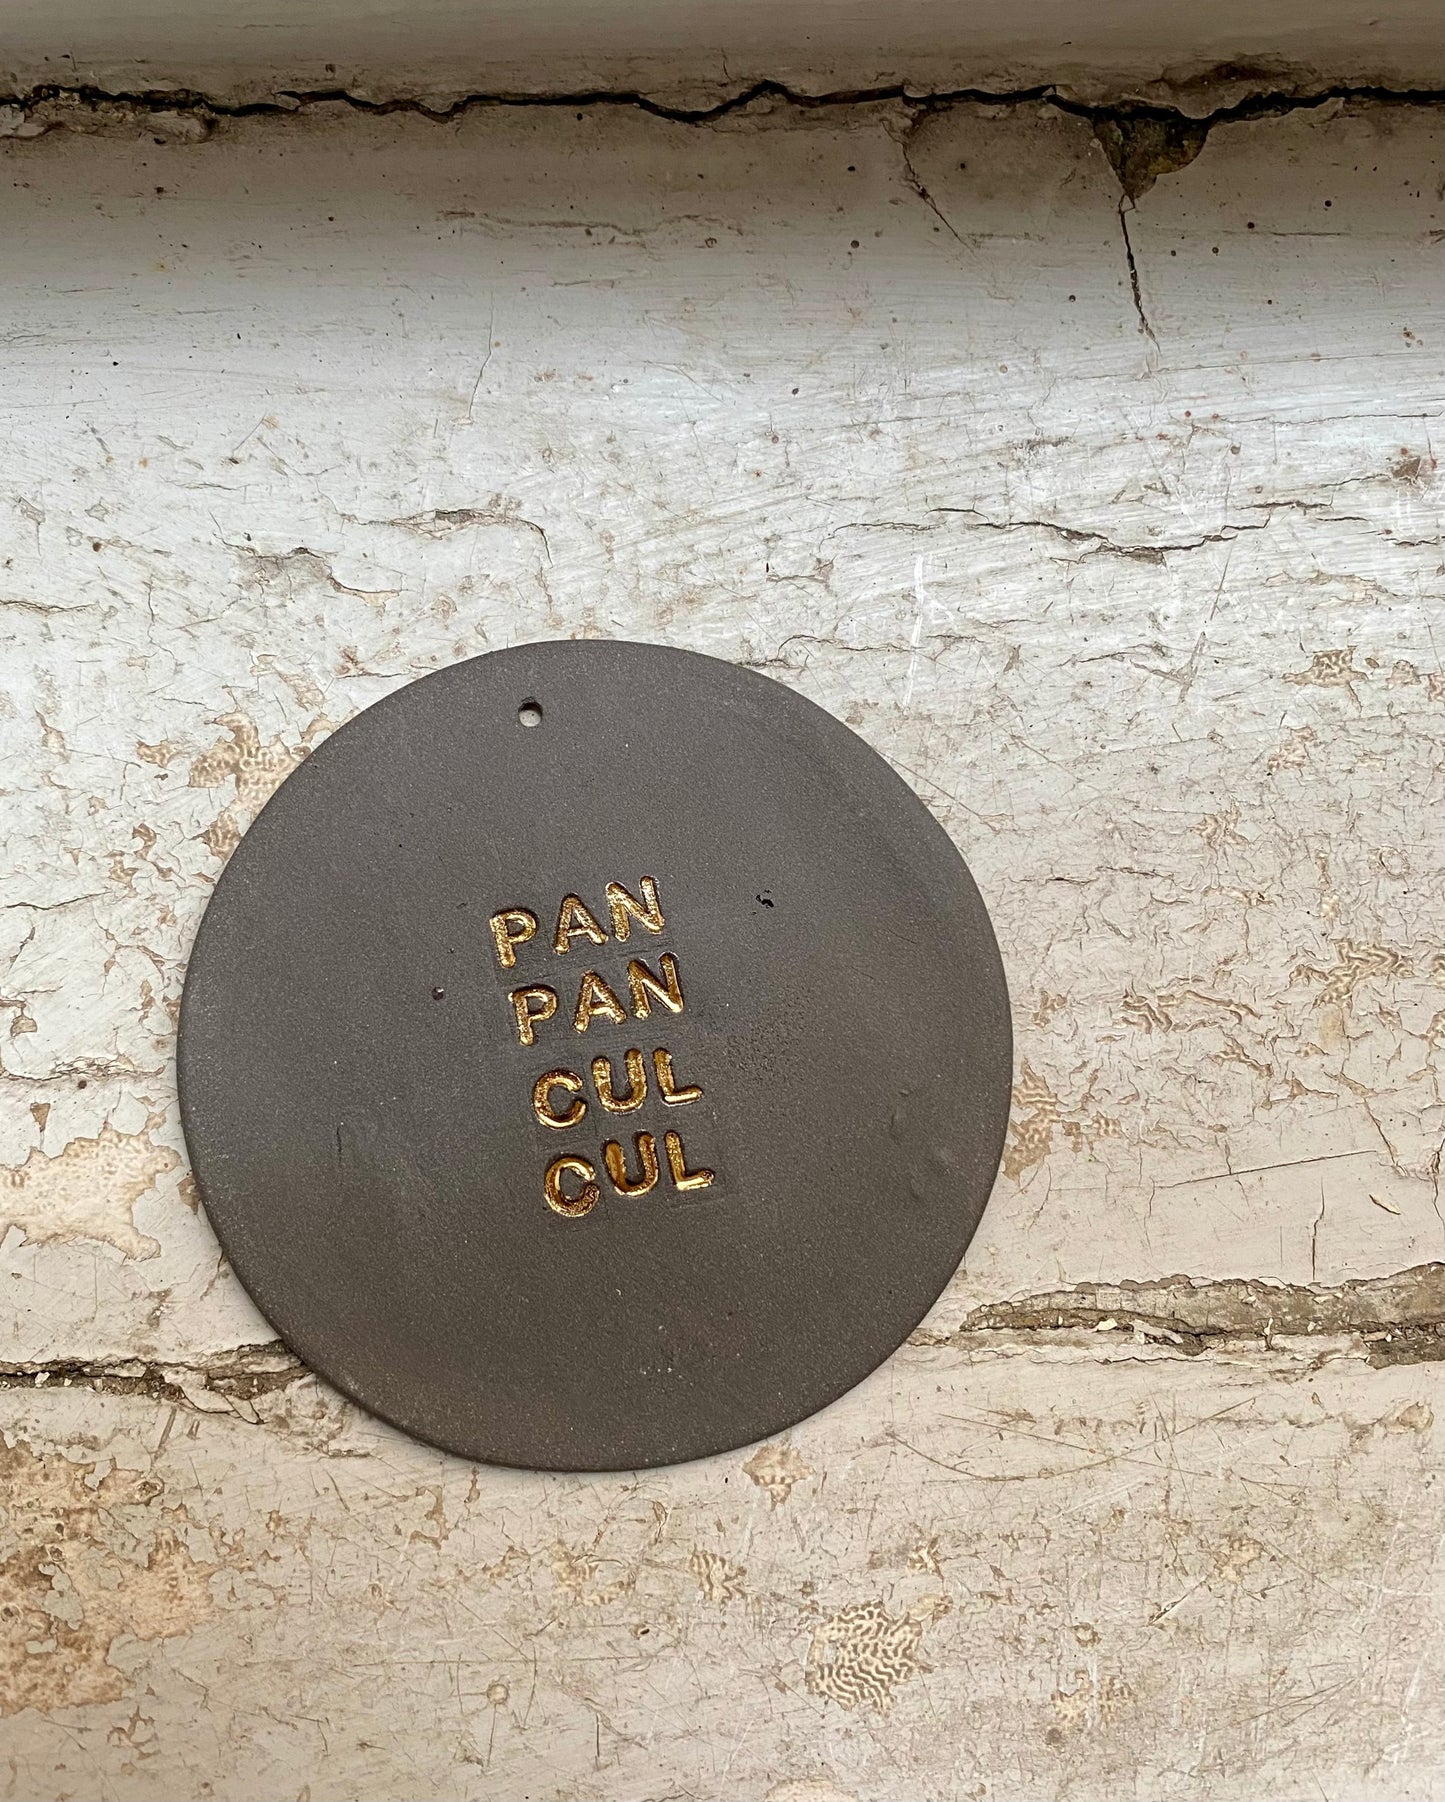 PAN PAN CUL CUL